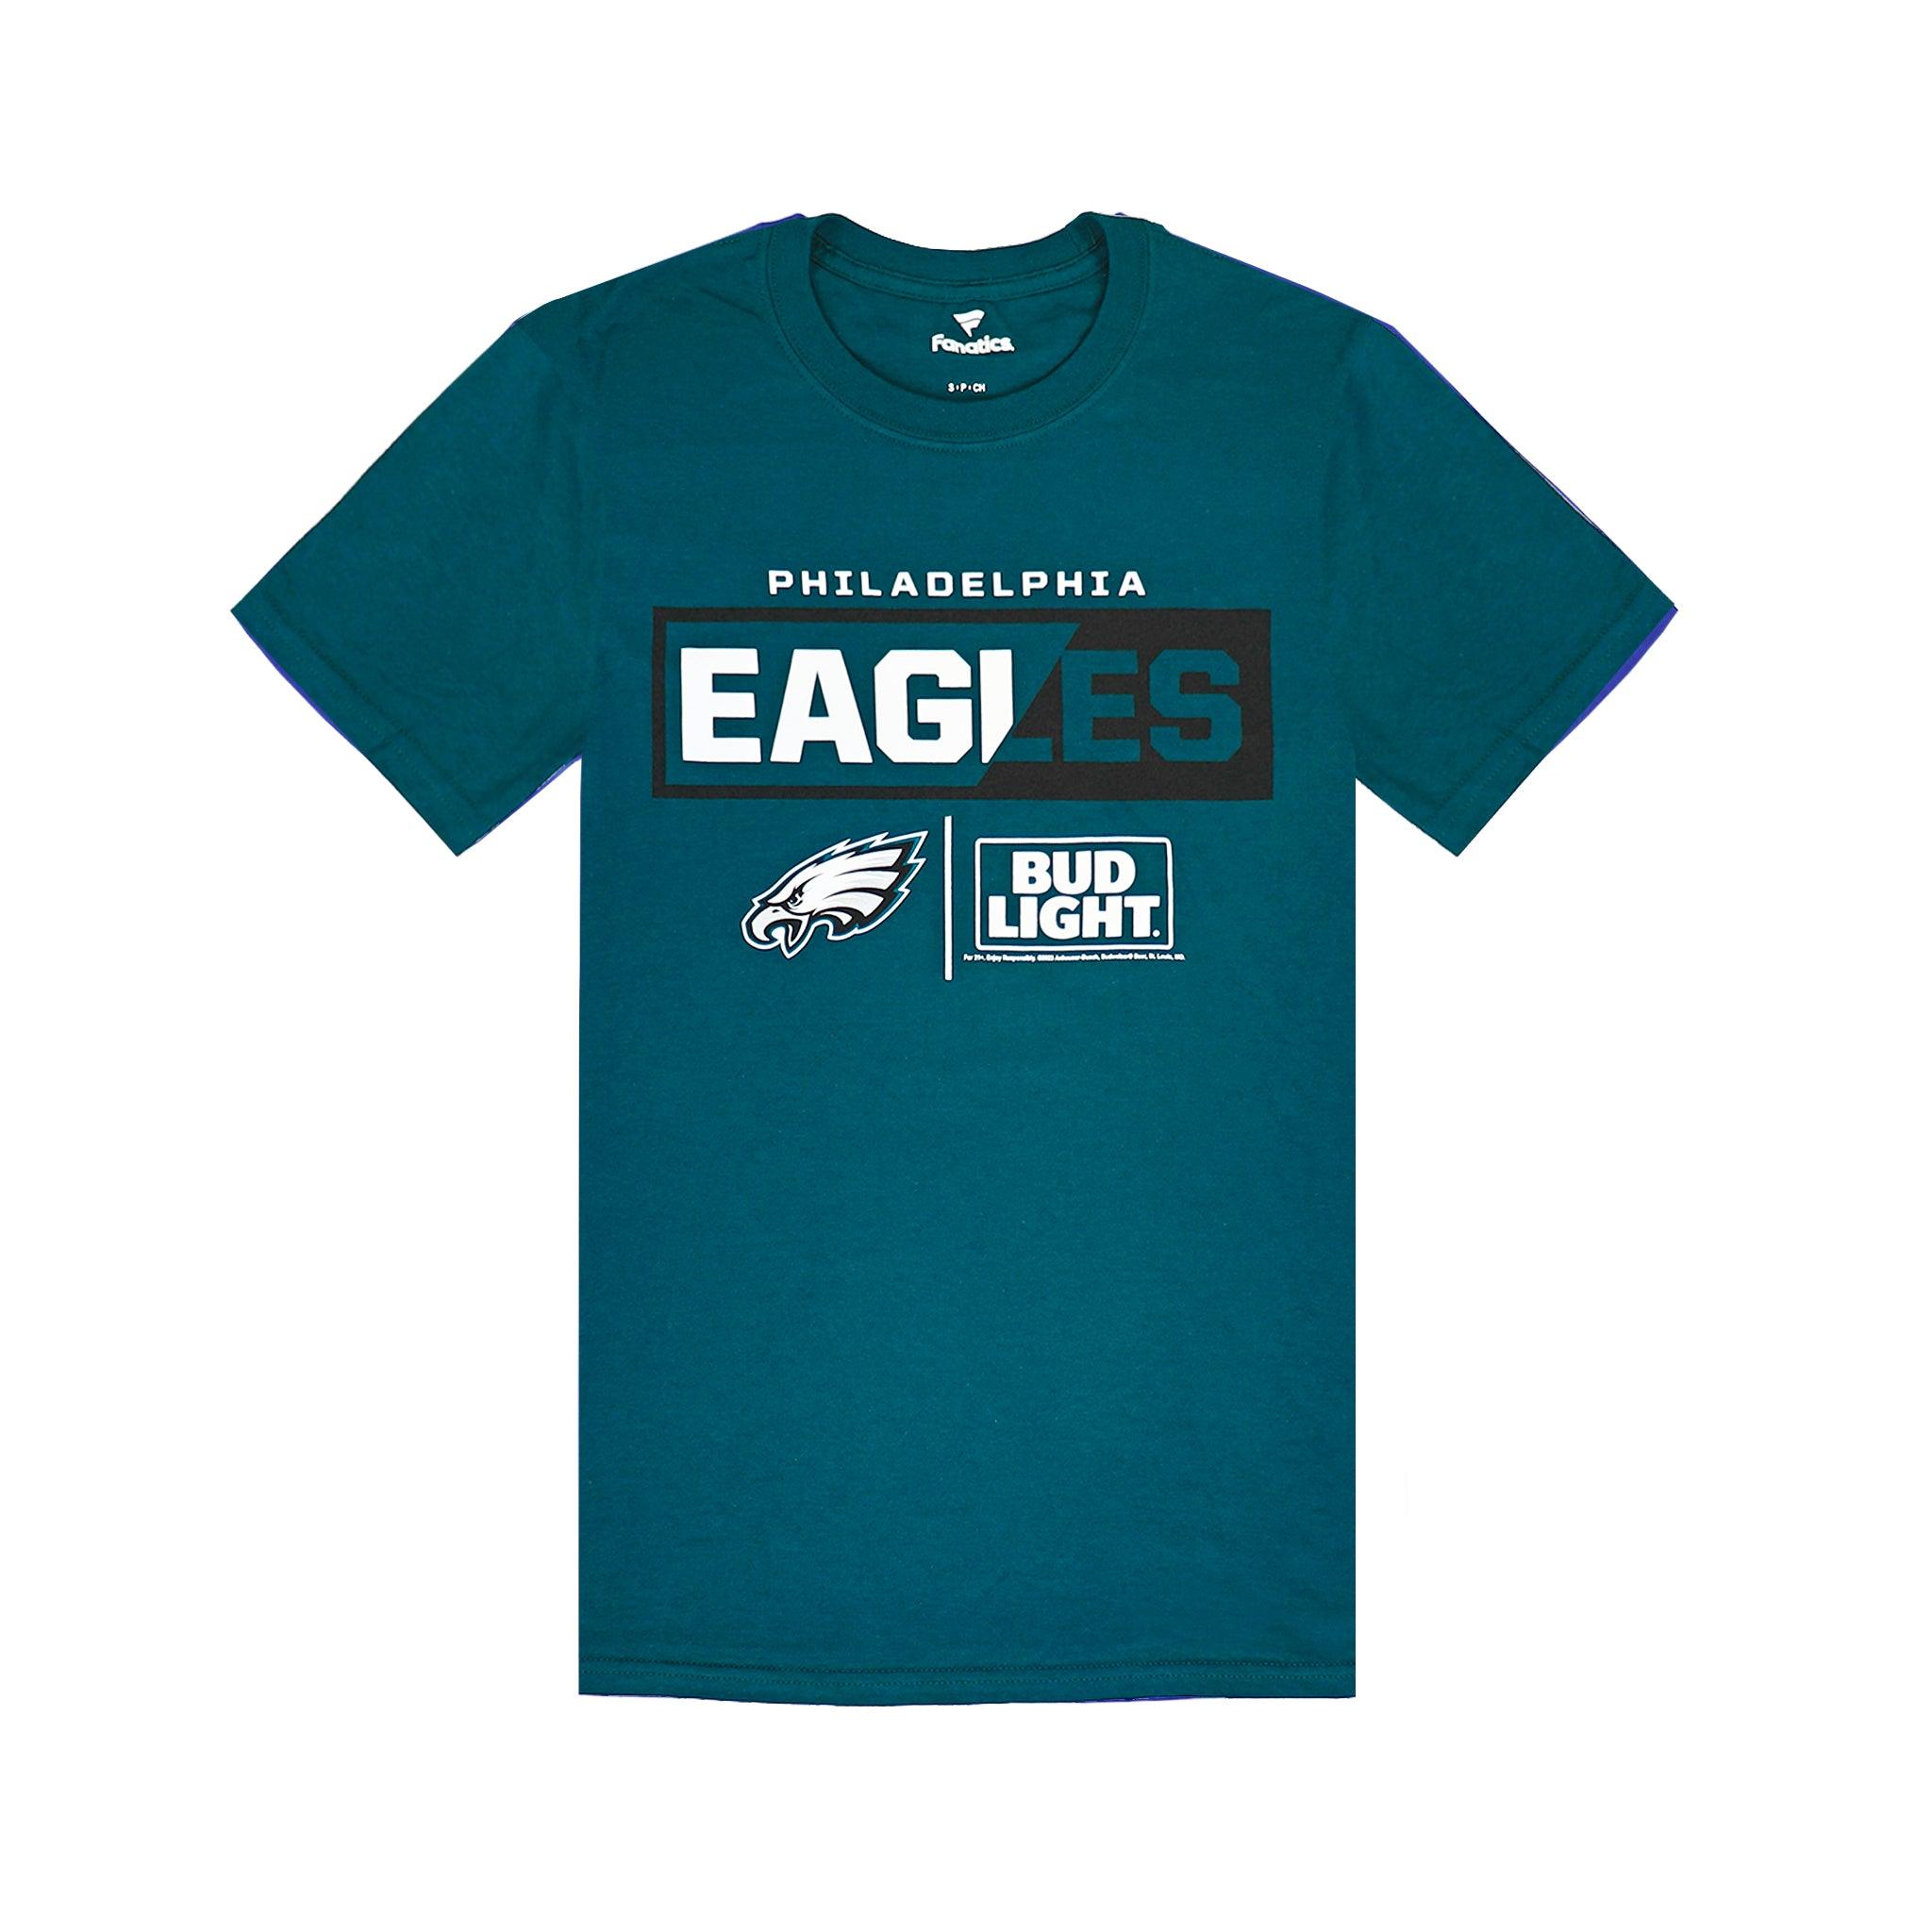 Bud Light Philadelphia Eagles Team T-Shirt S